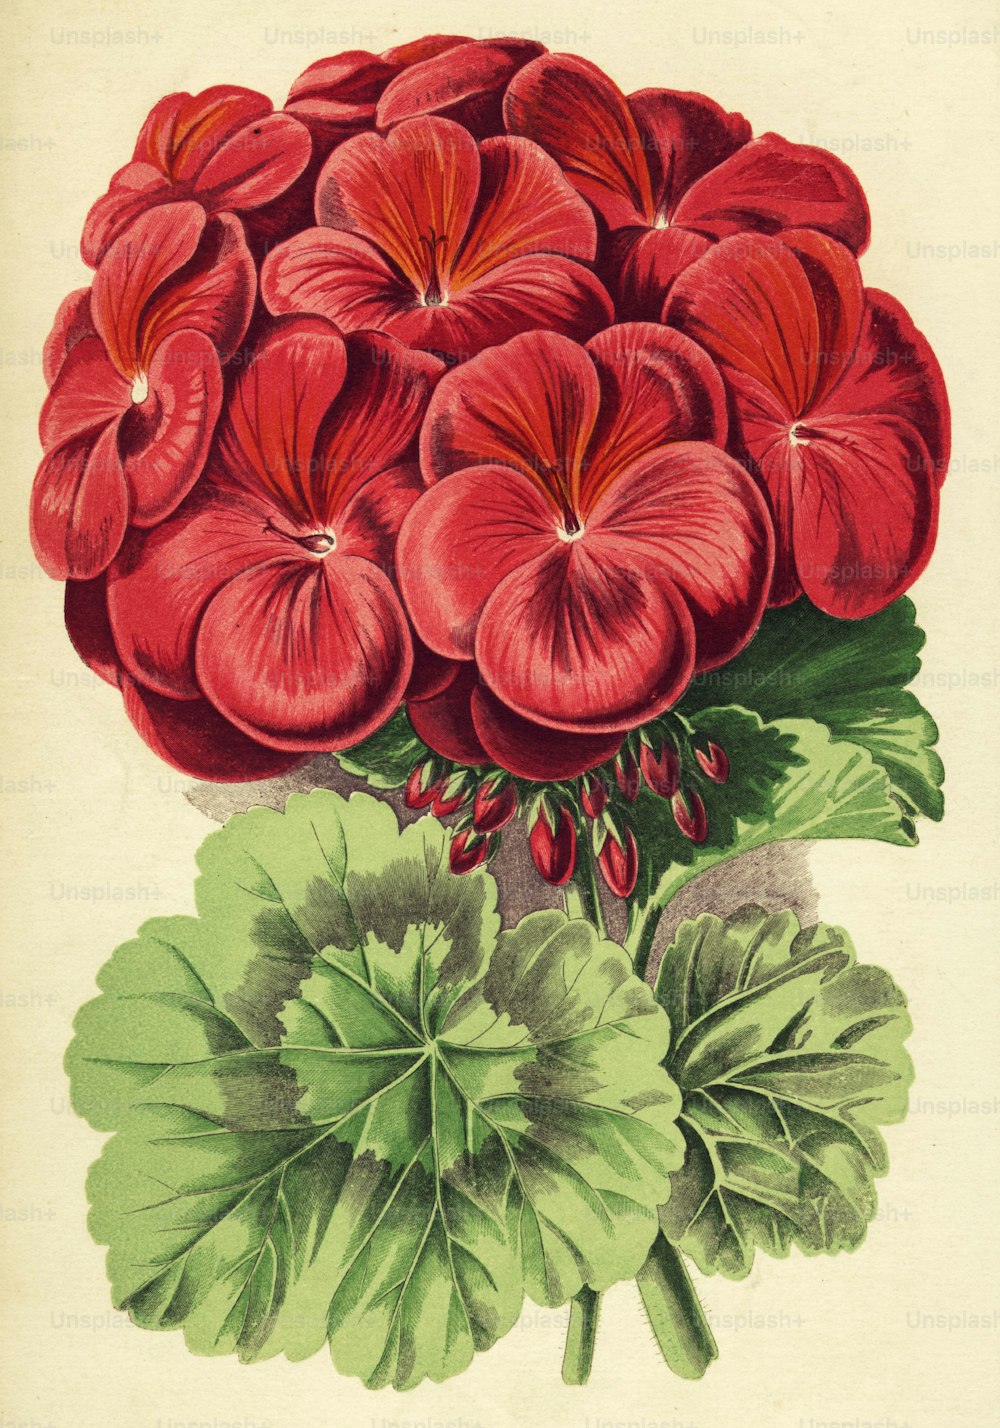 um 1850: Ein satter roter Pelargonium imogen (Foto von Hulton Archive / Getty Images)